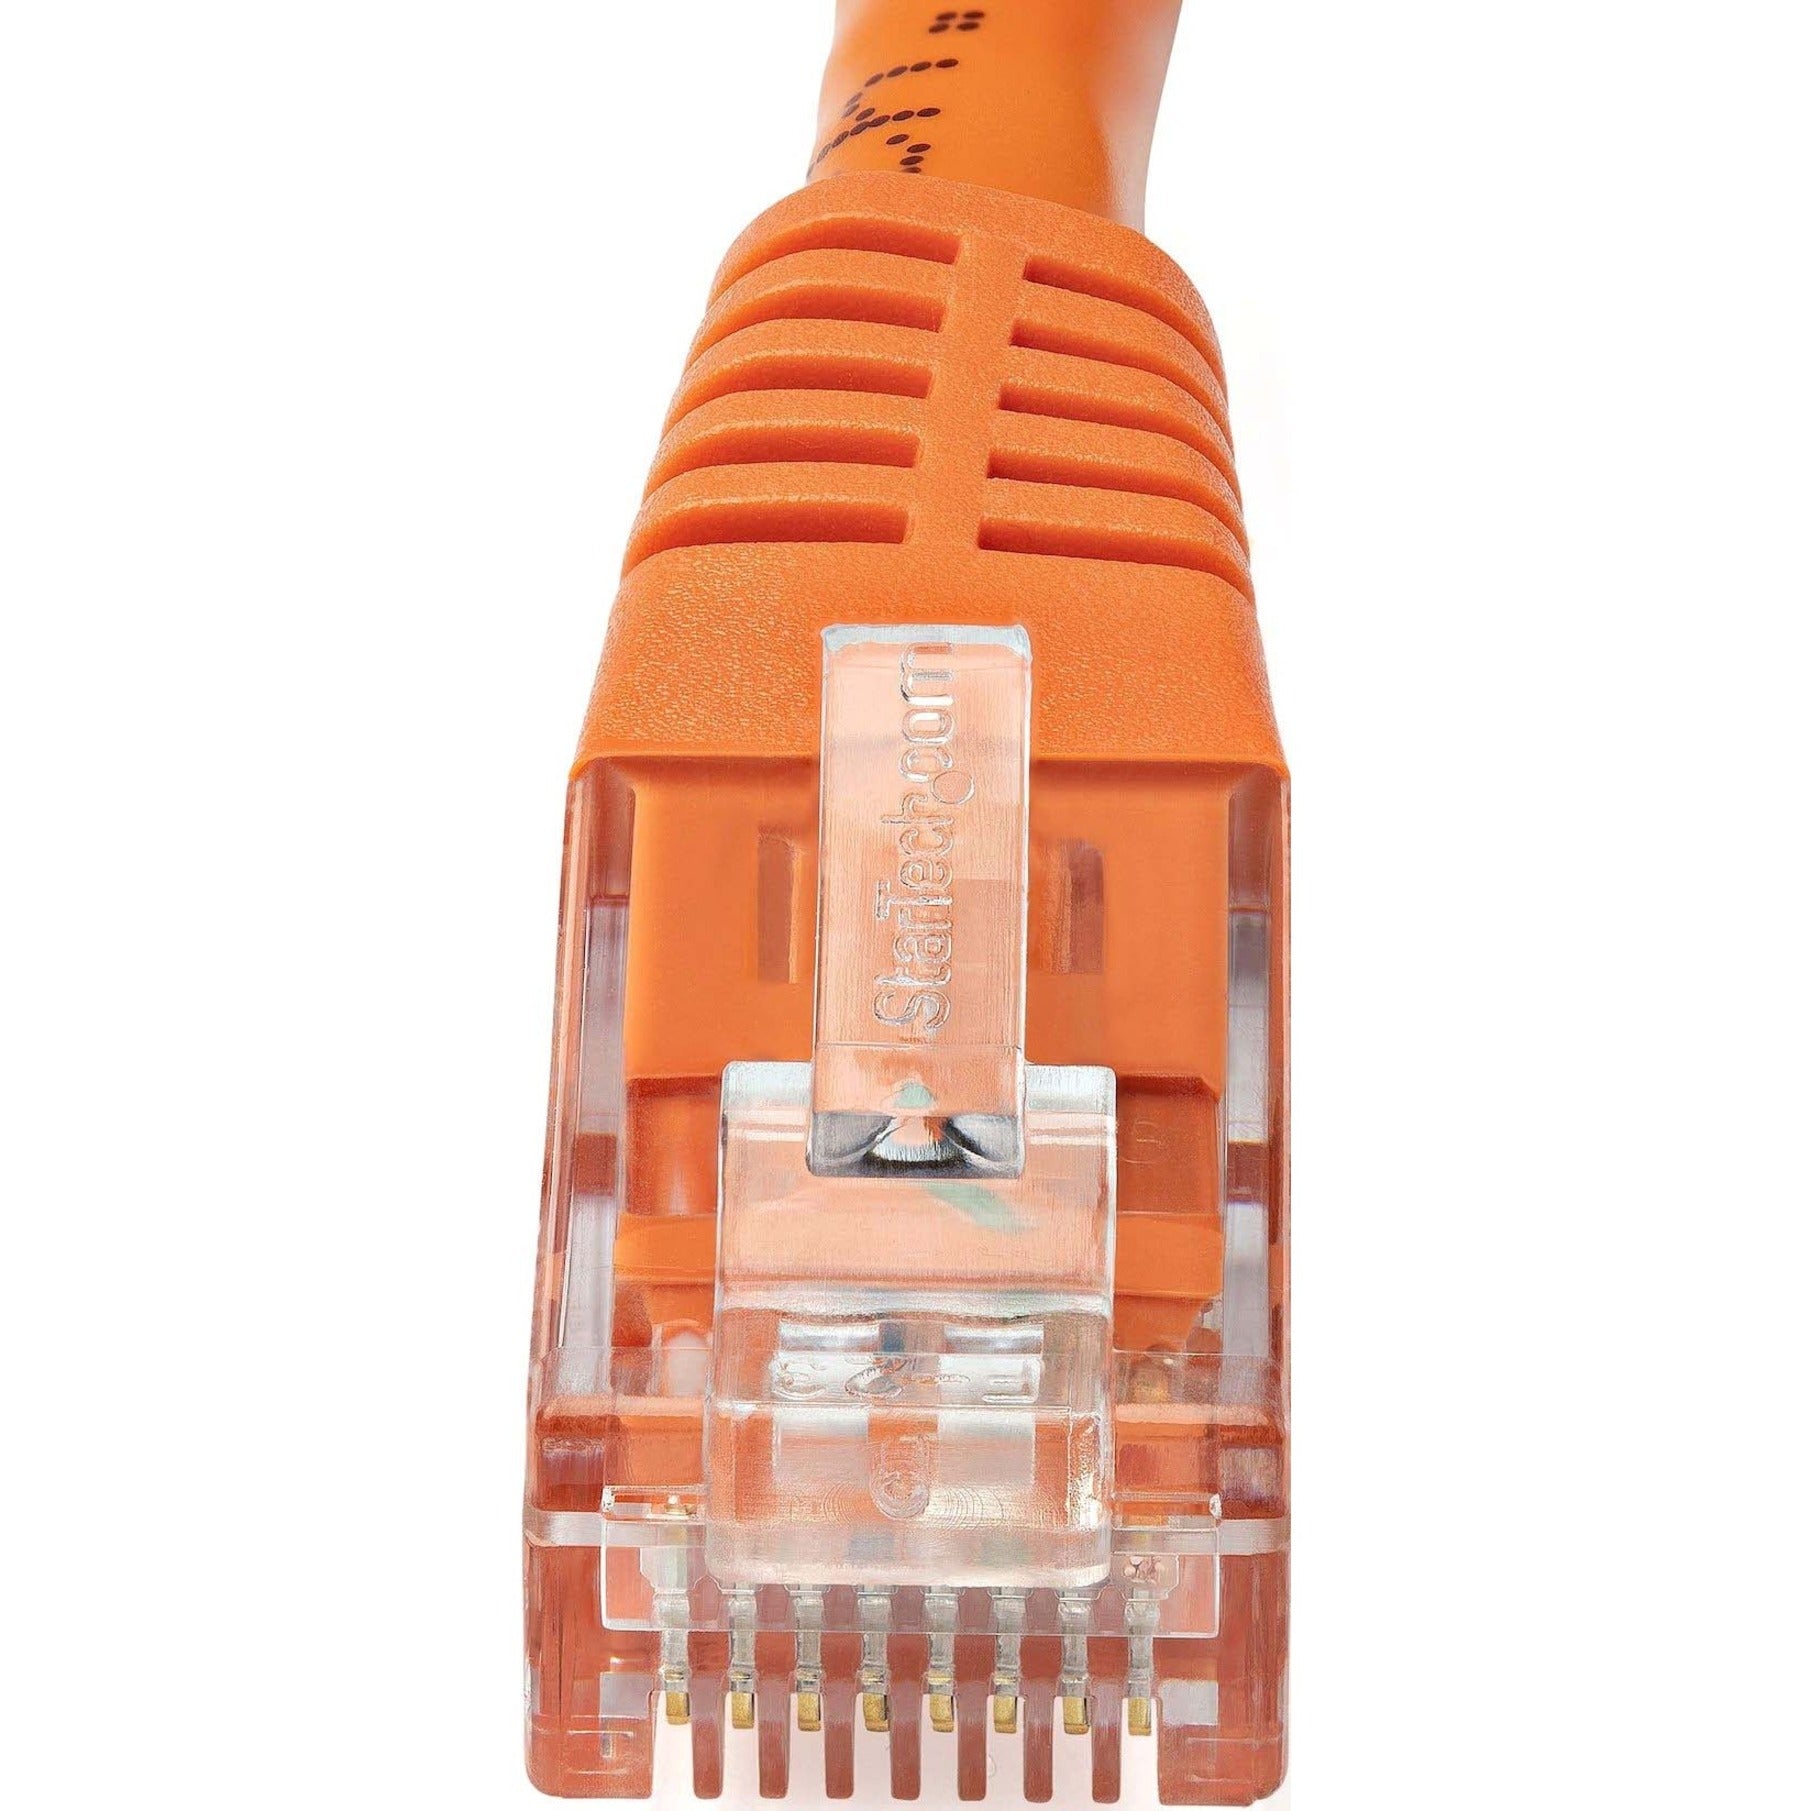 StarTech.com C6PATCH25OR 25ft Orange Cat6 UTP Patch Cable ETL Verified, Gigabit Ethernet Network Cord